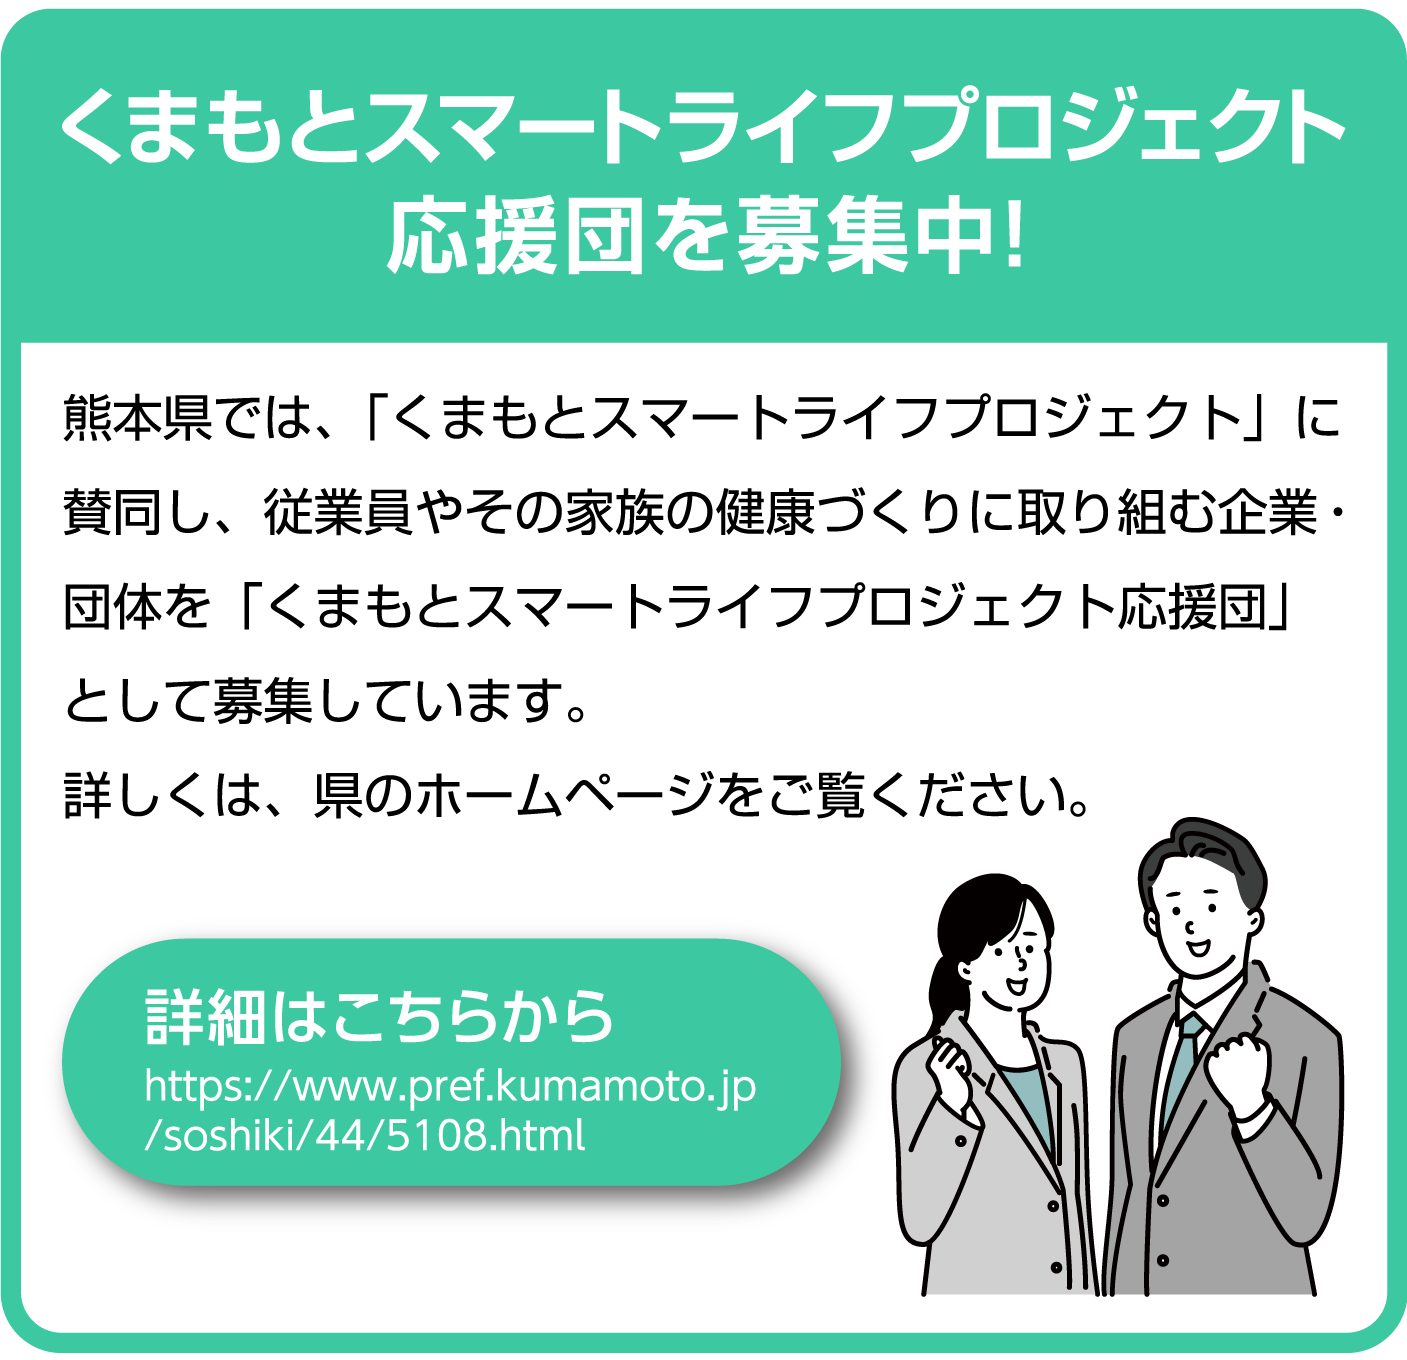 熊本県では、「くまもとスマートライフプロジェクト」に賛同し、従業員やその家族の健康づくりに取り組む企業・団体を「くまもとスマートライフプロジェクト応援団」として募集しています。詳しくは、県のホームページをご覧ください。